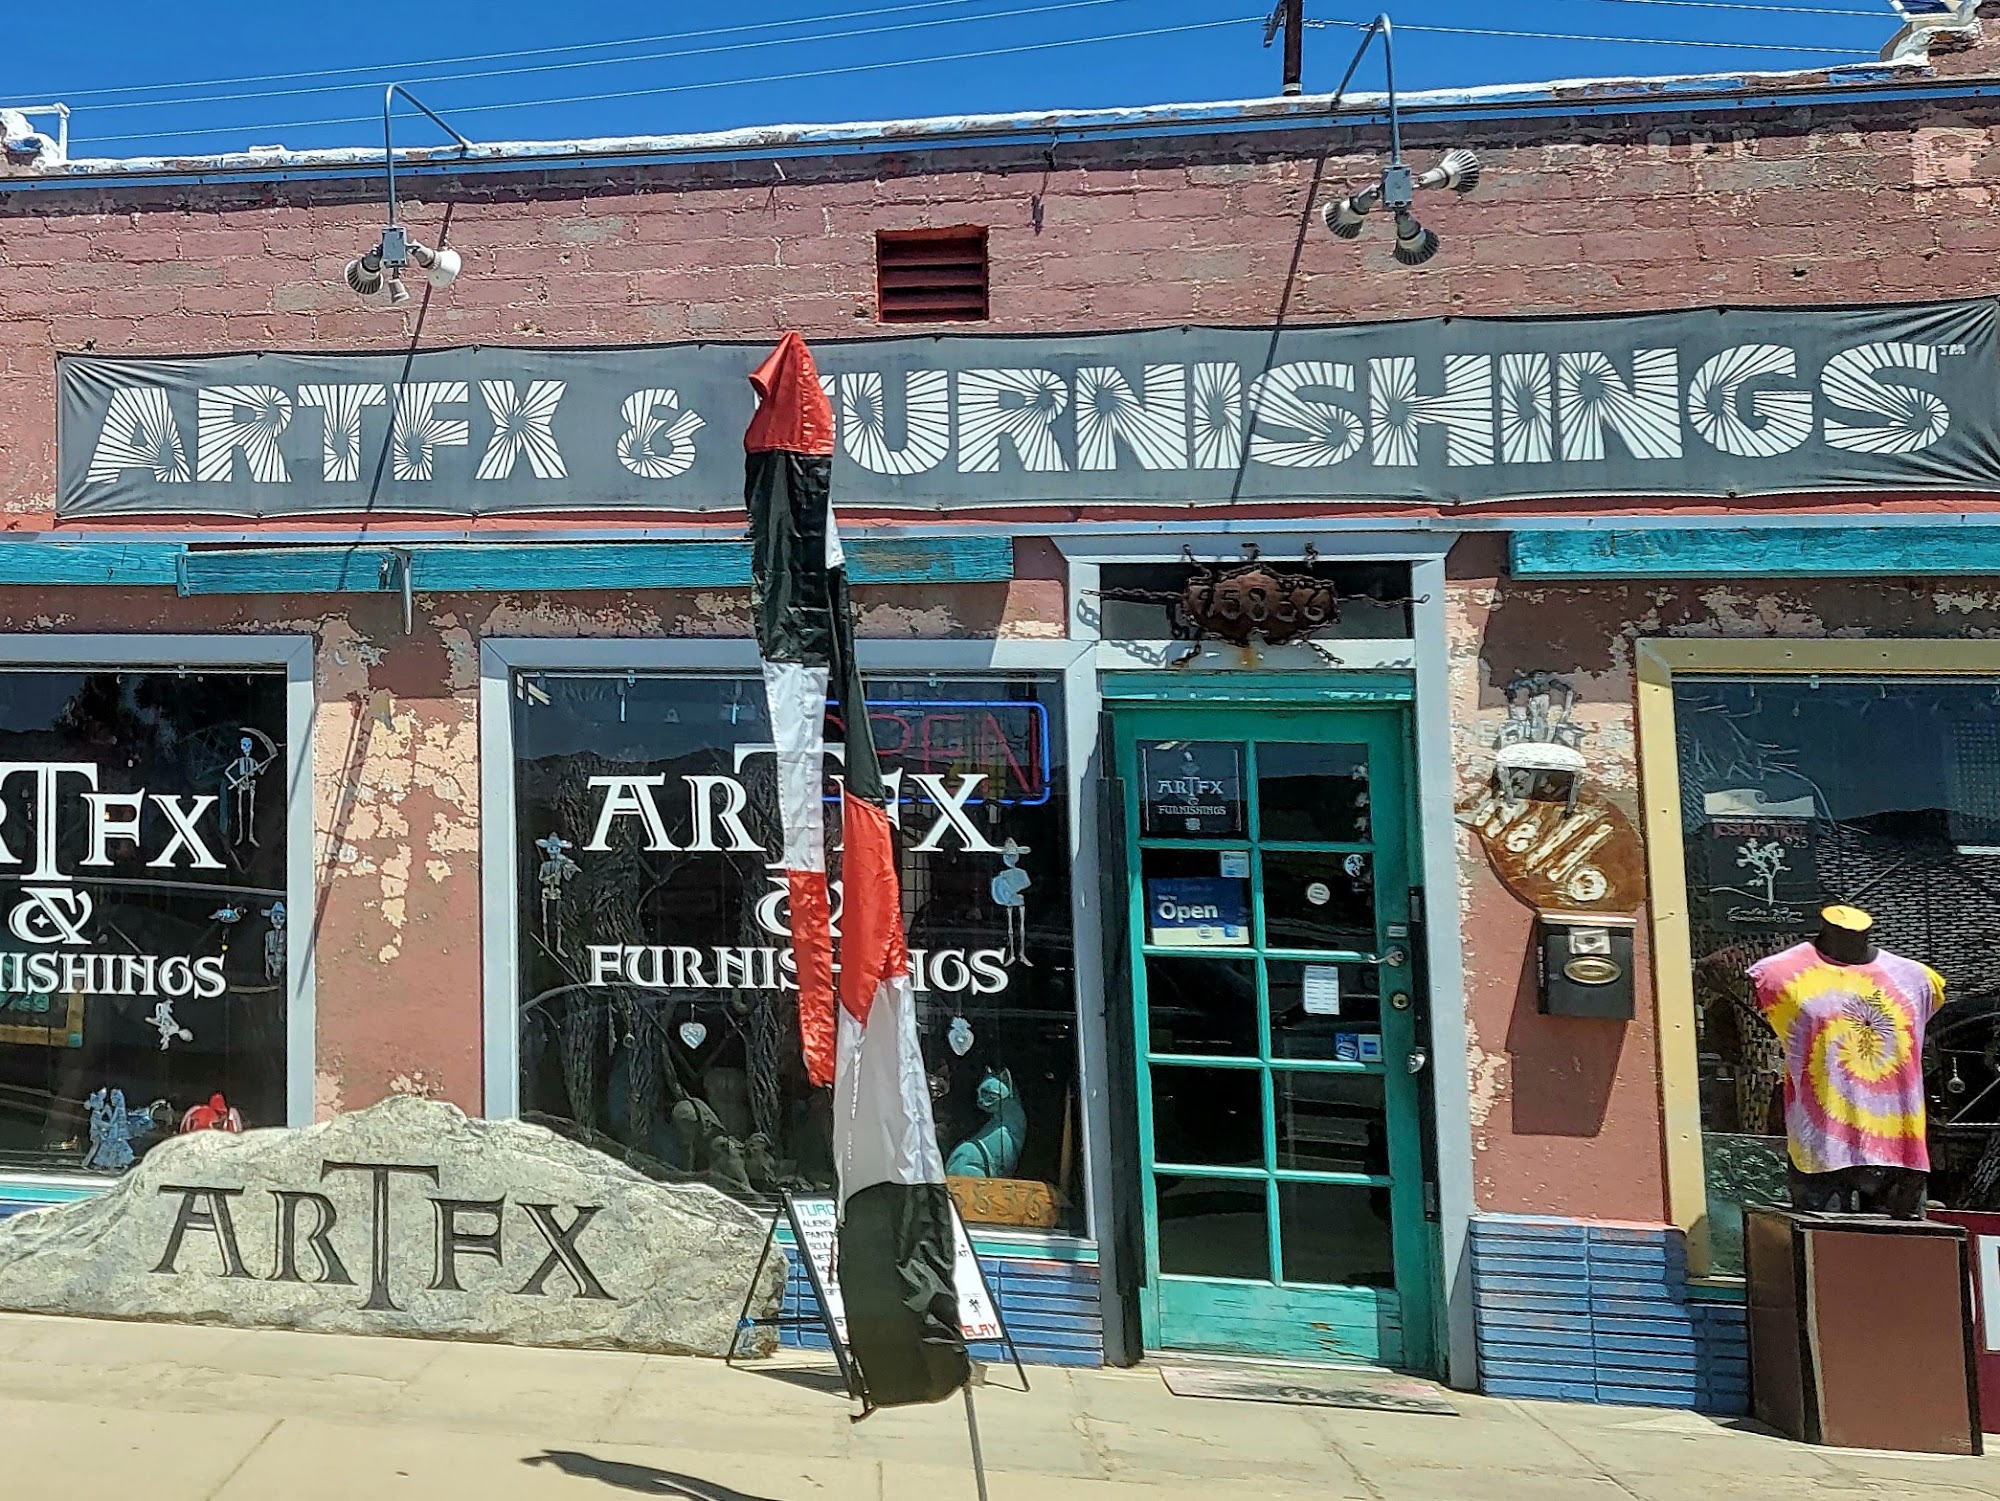 ArtFx & Furnishings